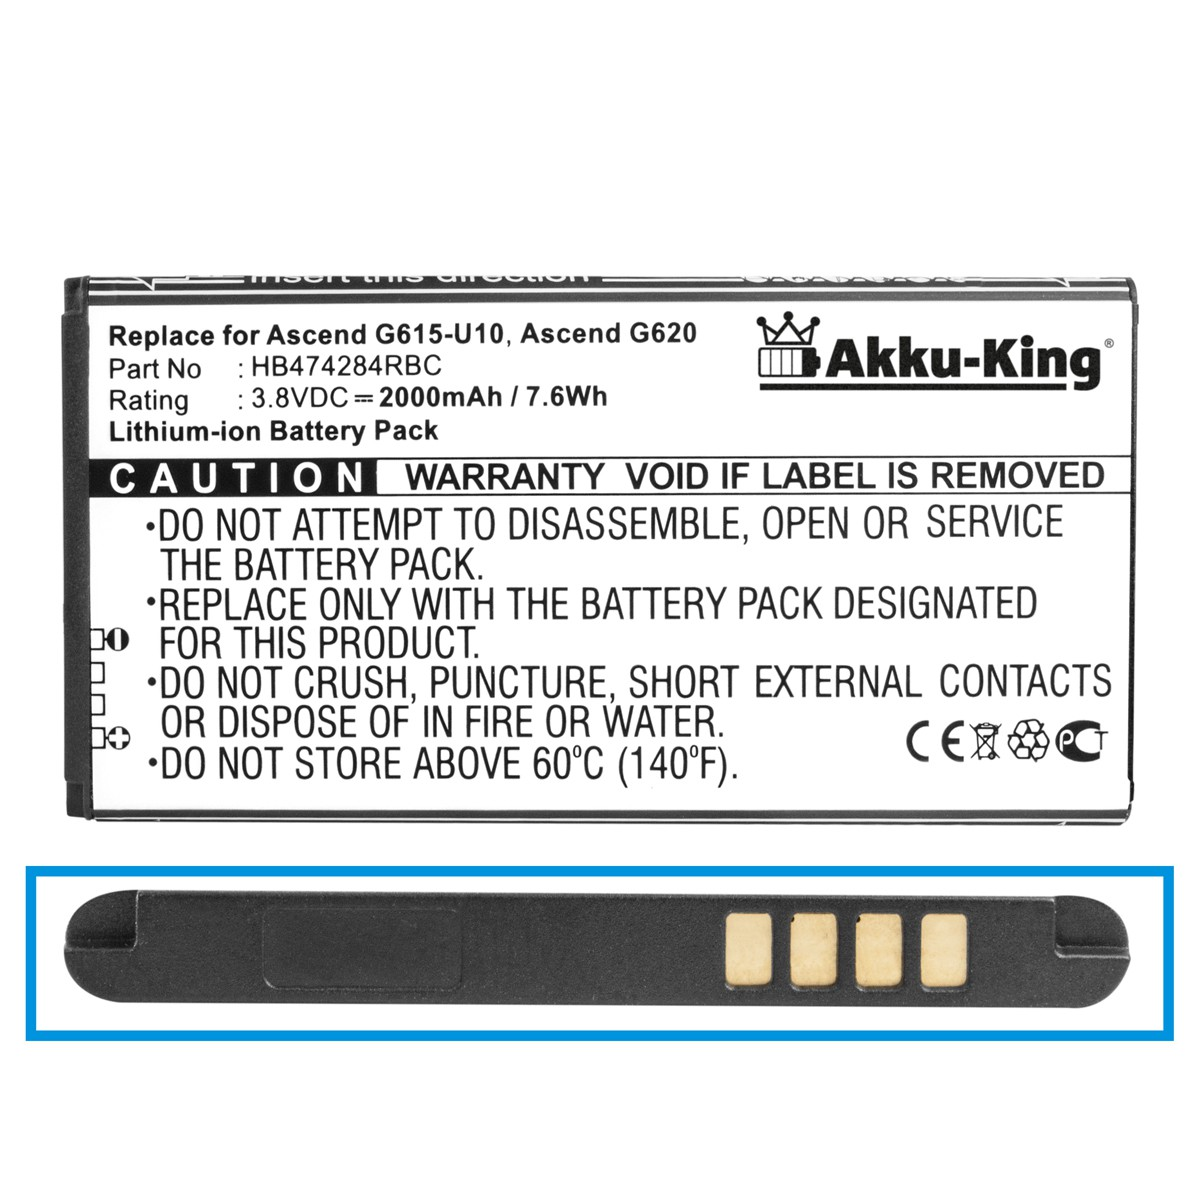 AKKU-KING Akku mit HB474284RBC Handy-Akku, kompatibel Volt, Huawei Li-Ion 3.8 2000mAh